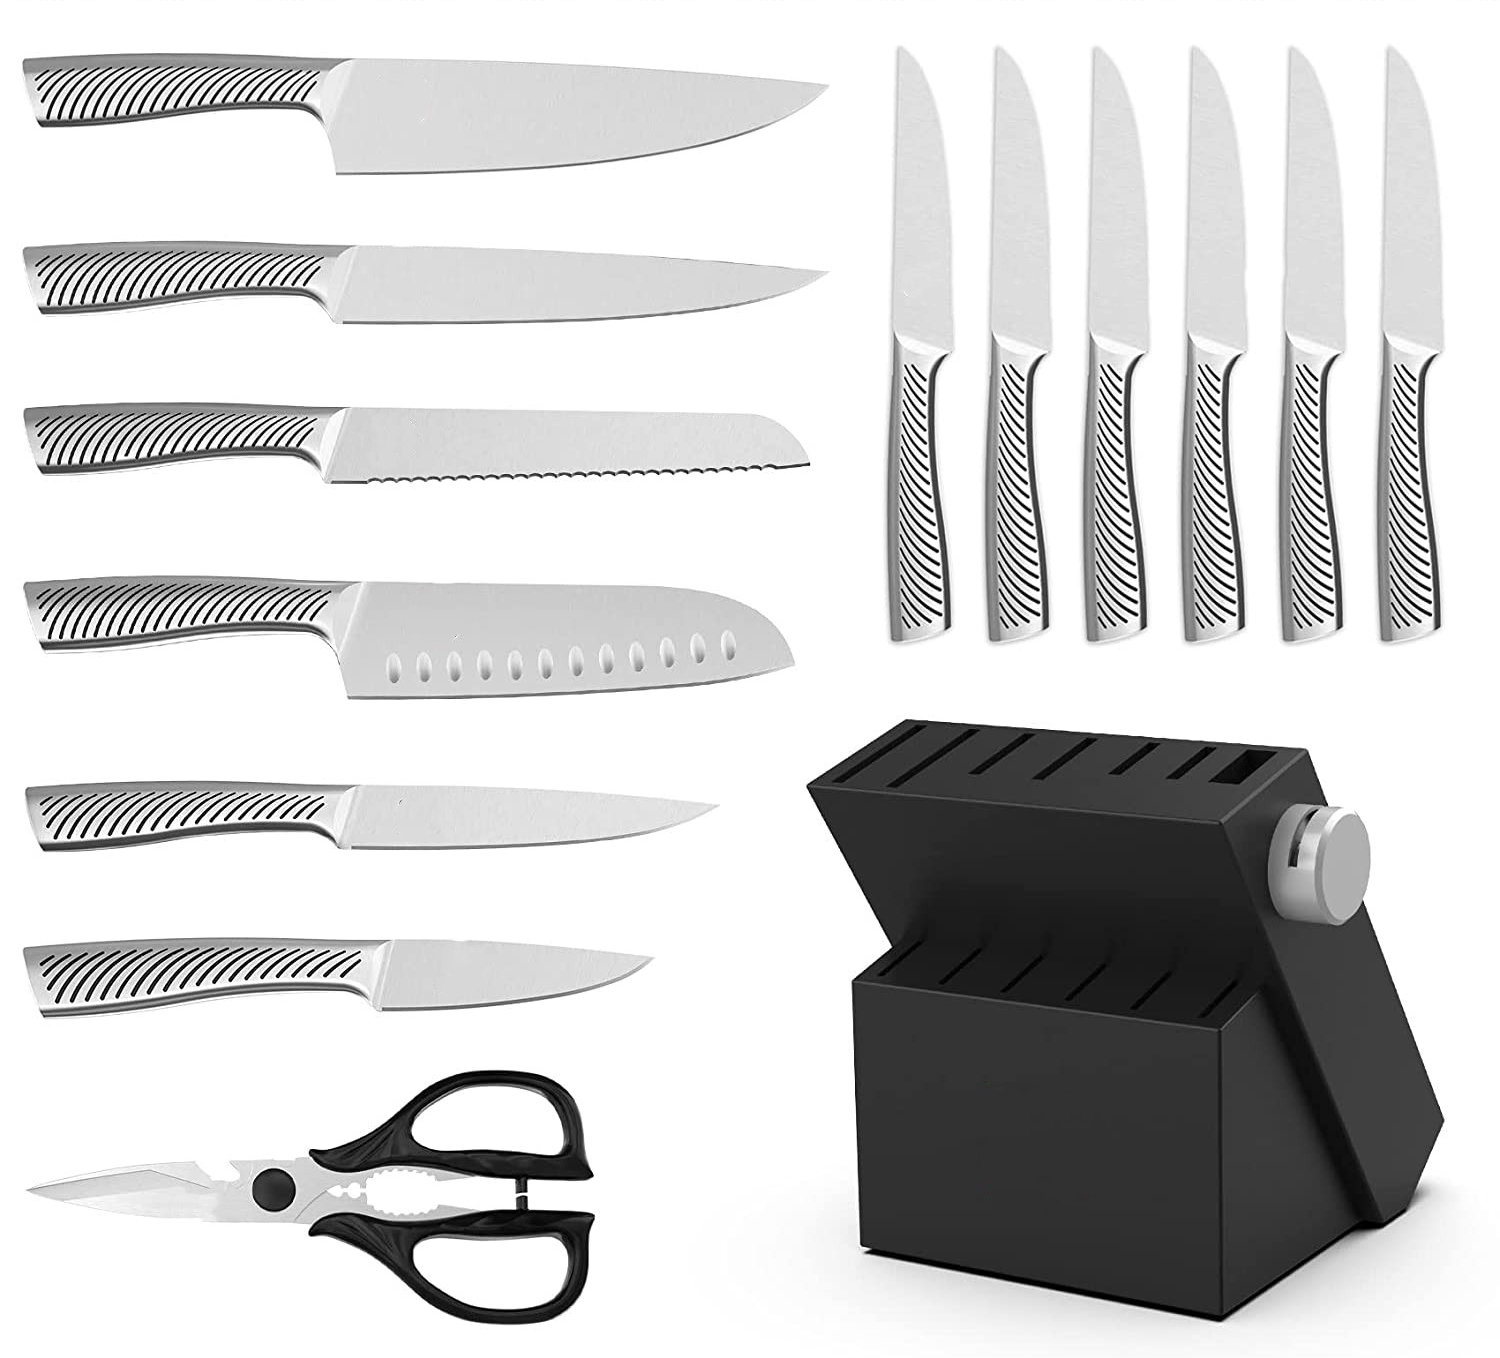 https://assets.wfcdn.com/im/60913056/compr-r85/2305/230590948/melissa-14-piece-stainless-steel-knife-block-set.jpg